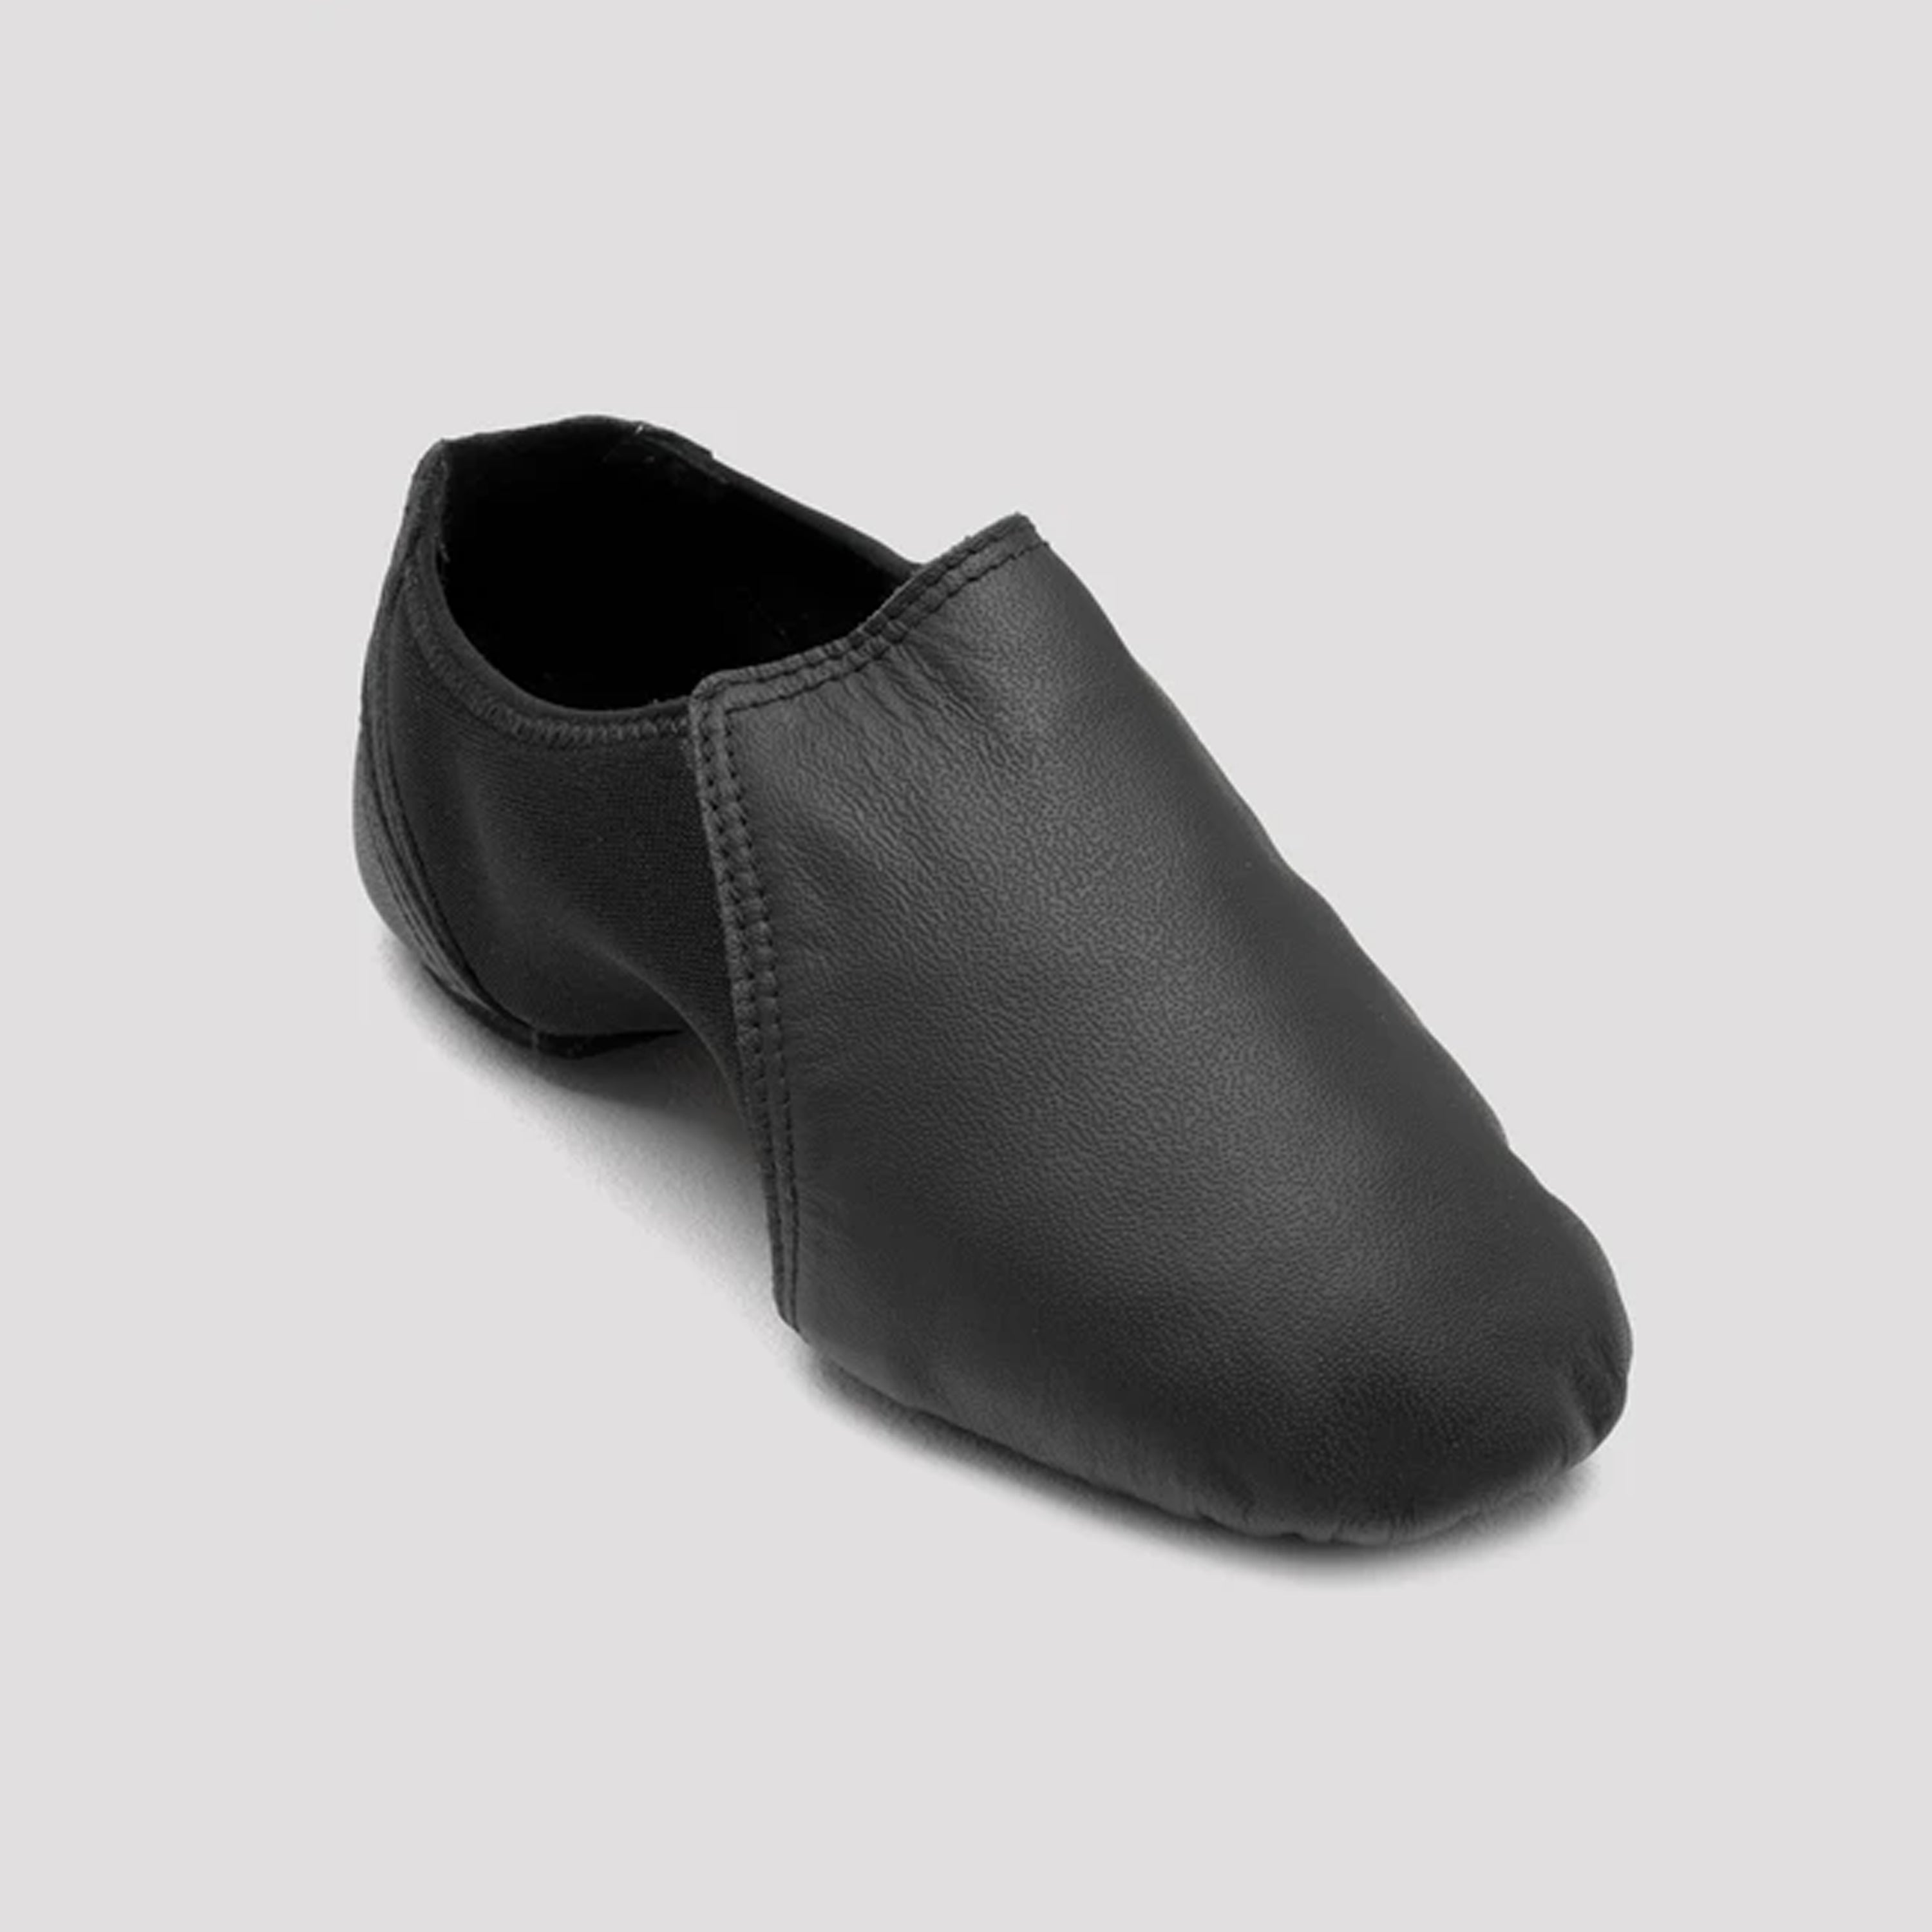 bloch s0470l womens pulse tan/black jazz shoe